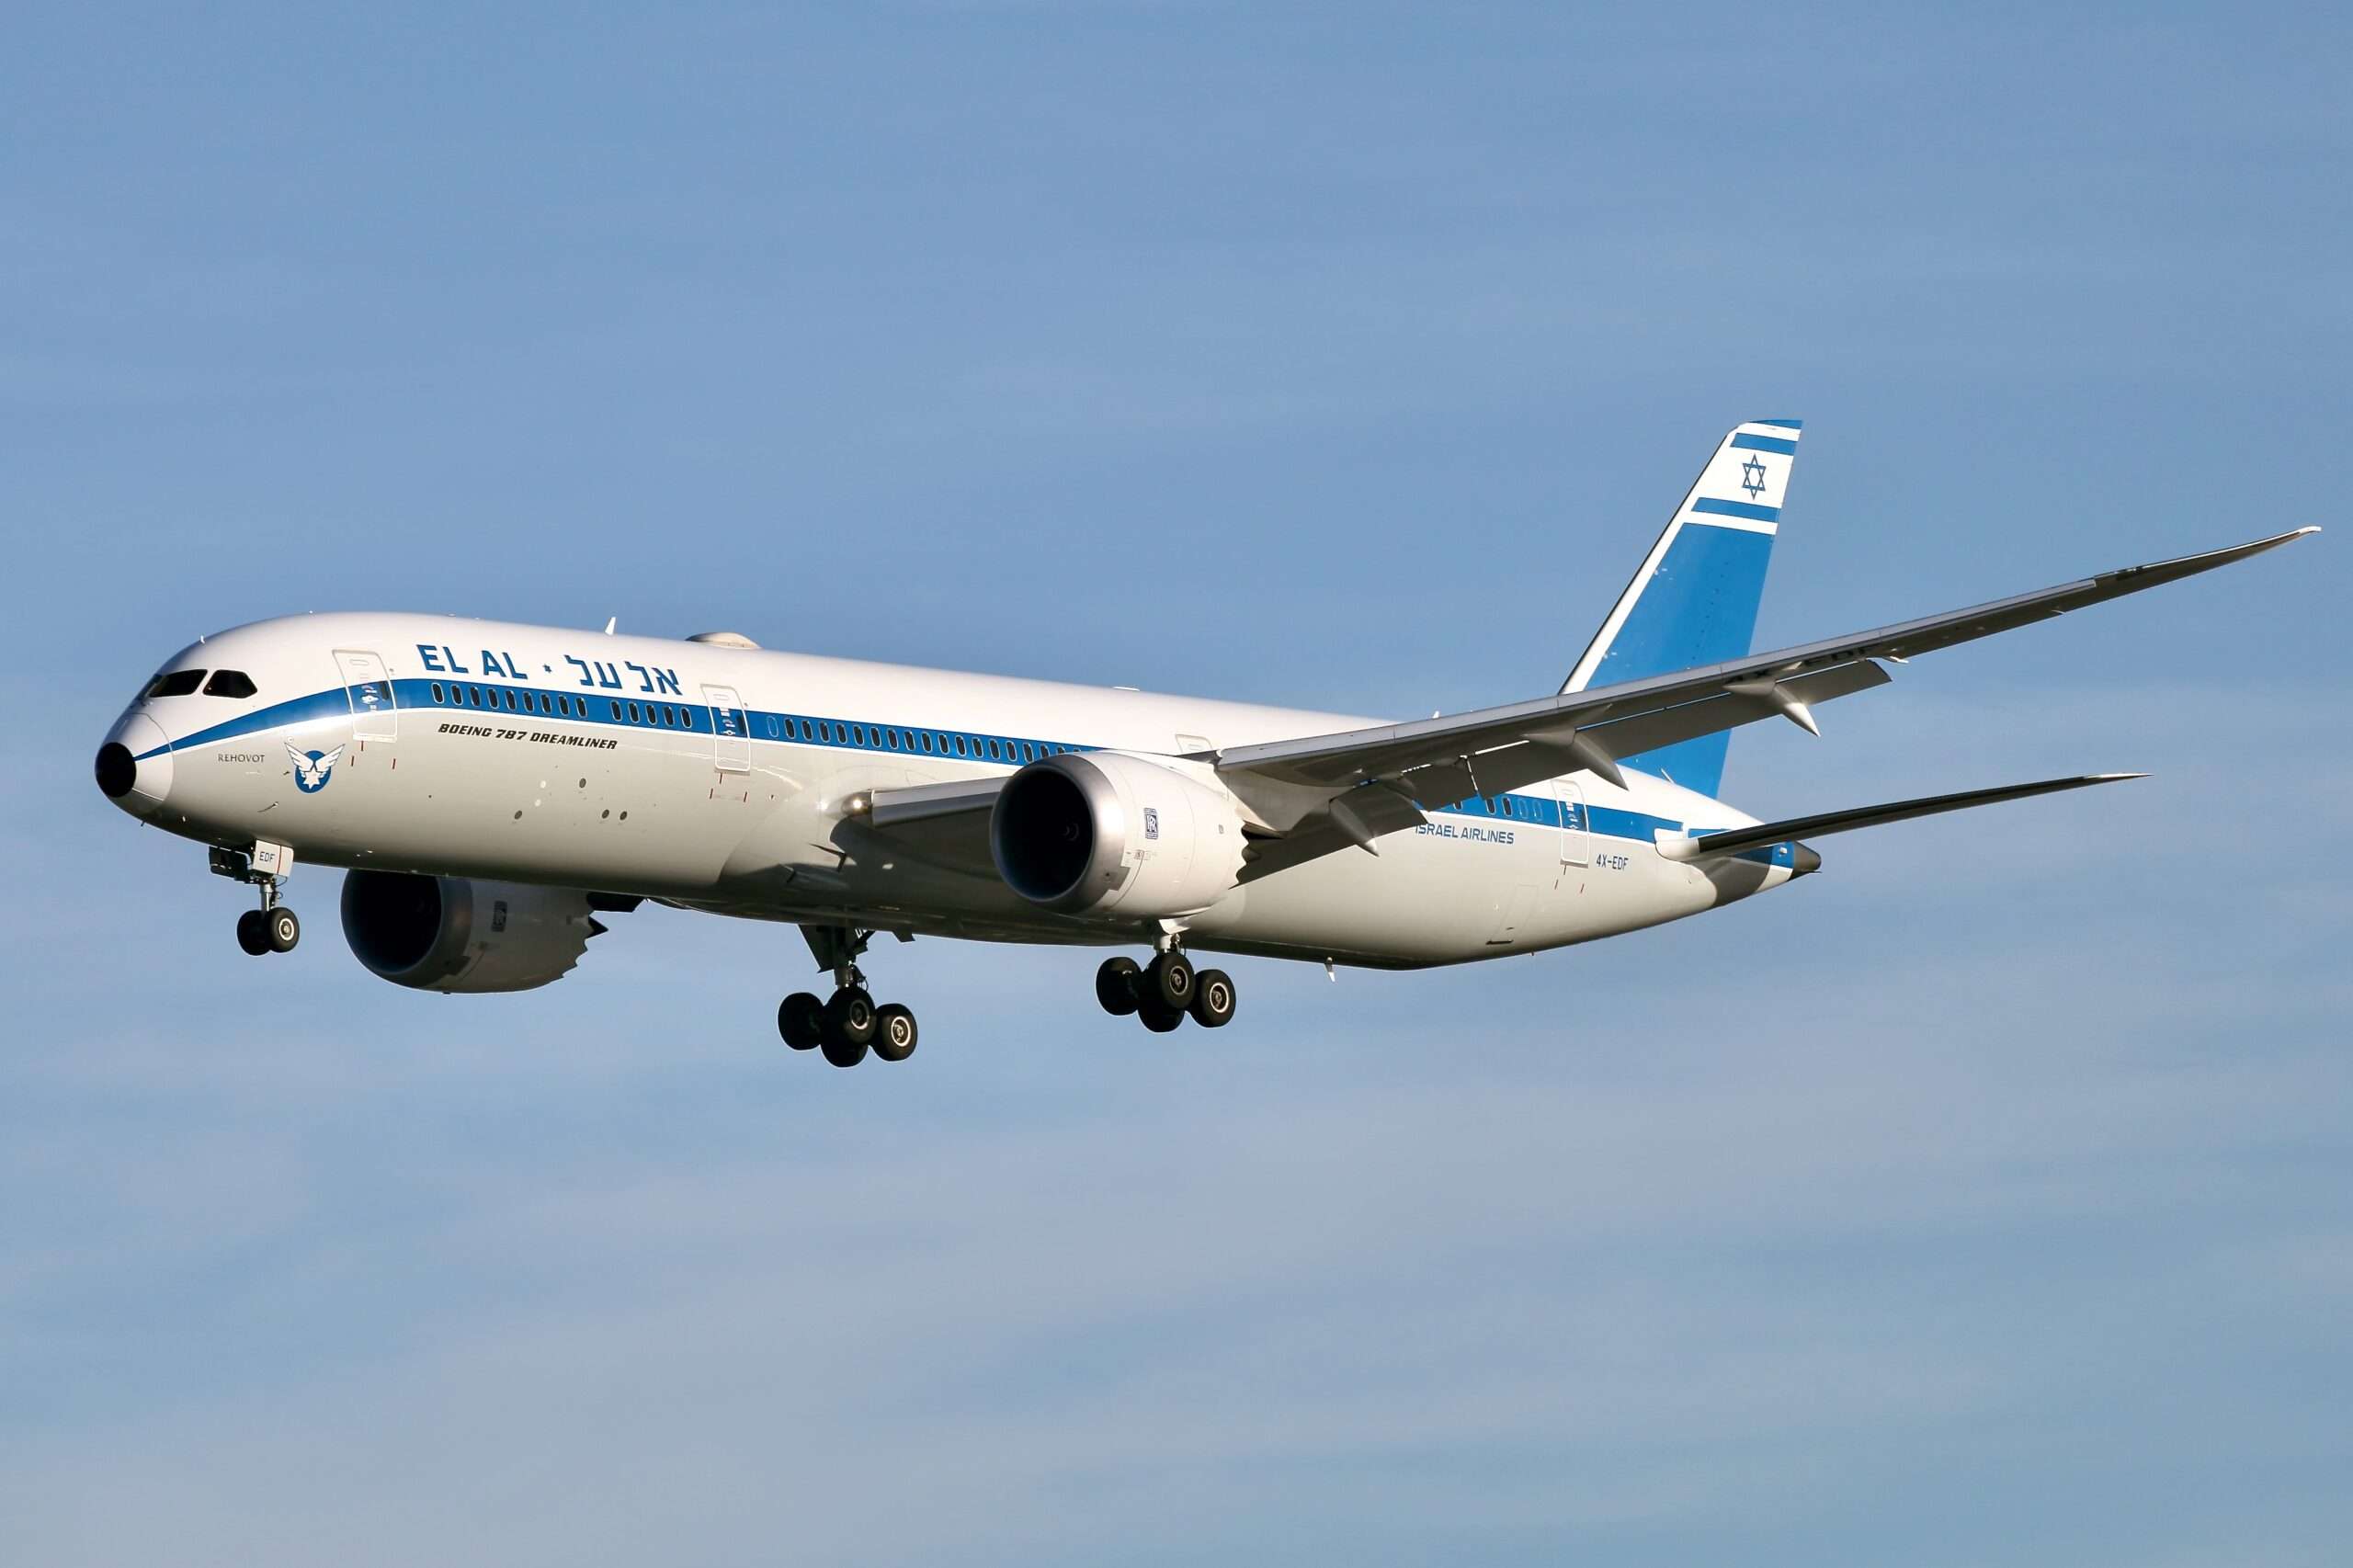 El Al 787 To Tel Aviv Given Security Escort in Los Angeles